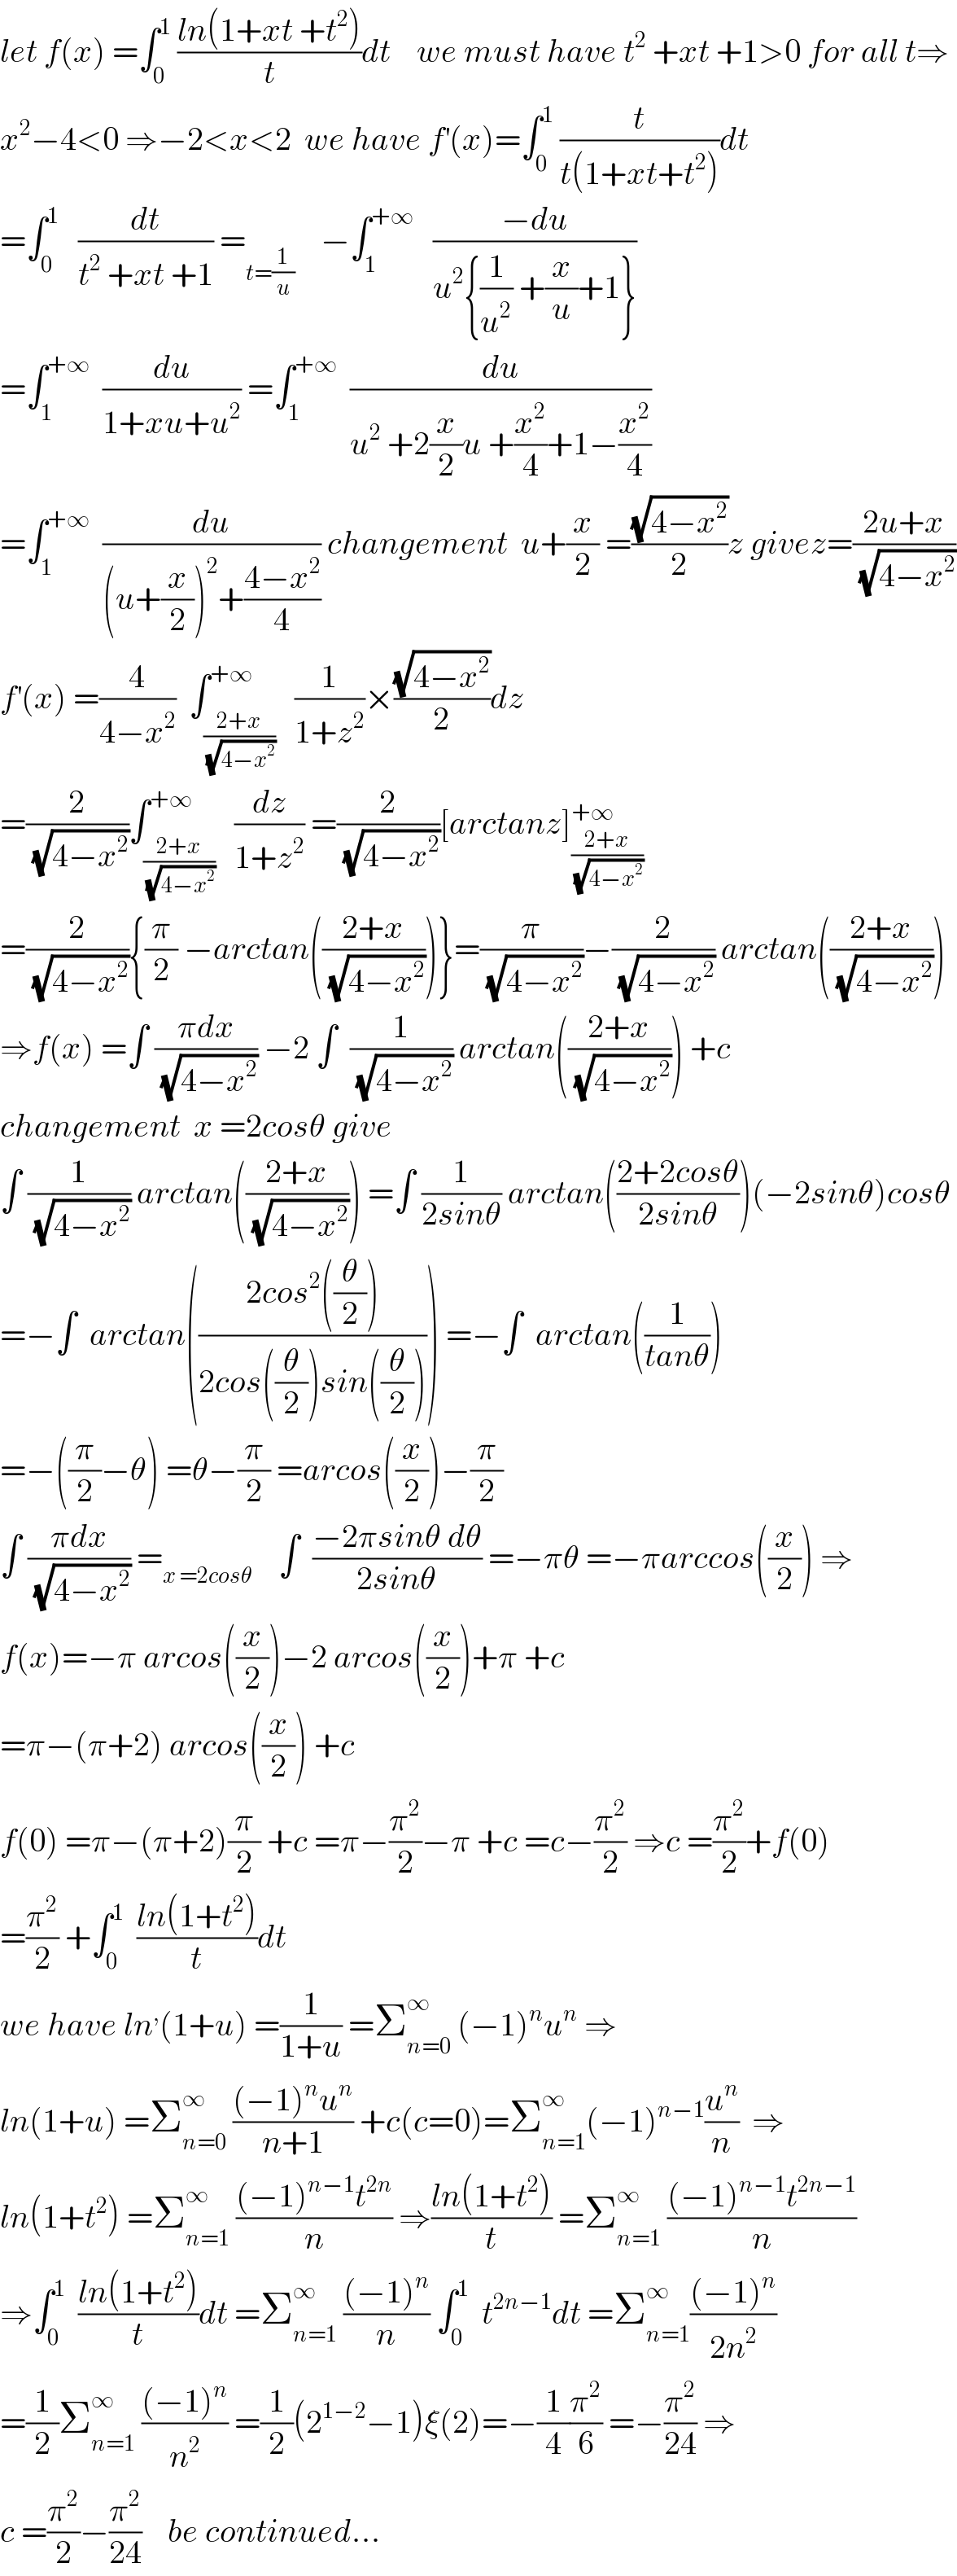 let f(x) =∫_0 ^1  ((ln(1+xt +t^2 ))/t)dt    we must have t^2  +xt +1>0 for all t⇒  x^2 −4<0 ⇒−2<x<2  we have f^′ (x)=∫_0 ^1  (t/(t(1+xt+t^2 )))dt  =∫_0 ^1    (dt/(t^2  +xt +1)) =_(t=(1/u))     −∫_1 ^(+∞)    ((−du)/(u^2 {(1/u^2 ) +(x/u)+1}))  =∫_1 ^(+∞)   (du/(1+xu+u^2 )) =∫_1 ^(+∞)   (du/(u^2  +2(x/2)u +(x^2 /4)+1−(x^2 /4)))  =∫_1 ^(+∞)   (du/((u+(x/2))^2 +((4−x^2 )/4))) changement  u+(x/2) =((√(4−x^2 ))/2)z givez=((2u+x)/(√(4−x^2 )))  f^′ (x) =(4/(4−x^2 ))  ∫_((2+x)/(√(4−x^2 ))) ^(+∞)   (1/(1+z^2 ))×((√(4−x^2 ))/2)dz  =(2/(√(4−x^2 )))∫_((2+x)/(√(4−x^2 ))) ^(+∞)   (dz/(1+z^2 )) =(2/(√(4−x^2 )))[arctanz]_((2+x)/(√(4−x^2 ))) ^(+∞)   =(2/(√(4−x^2 ))){(π/2) −arctan(((2+x)/(√(4−x^2 ))))}=(π/(√(4−x^2 )))−(2/(√(4−x^2 ))) arctan(((2+x)/(√(4−x^2 ))))  ⇒f(x) =∫ ((πdx)/(√(4−x^2 ))) −2 ∫  (1/(√(4−x^2 ))) arctan(((2+x)/(√(4−x^2 )))) +c  changement  x =2cosθ give  ∫ (1/(√(4−x^2 ))) arctan(((2+x)/(√(4−x^2 )))) =∫ (1/(2sinθ)) arctan(((2+2cosθ)/(2sinθ)))(−2sinθ)cosθ  =−∫  arctan(((2cos^2 ((θ/2)))/(2cos((θ/2))sin((θ/2))))) =−∫  arctan((1/(tanθ)))  =−((π/2)−θ) =θ−(π/2) =arcos((x/2))−(π/2)  ∫ ((πdx)/(√(4−x^2 ))) =_(x =2cosθ)     ∫  ((−2πsinθ dθ)/(2sinθ)) =−πθ =−πarccos((x/2)) ⇒  f(x)=−π arcos((x/2))−2 arcos((x/2))+π +c  =π−(π+2) arcos((x/2)) +c  f(0) =π−(π+2)(π/2) +c =π−(π^2 /2)−π +c =c−(π^2 /2) ⇒c =(π^2 /2)+f(0)  =(π^2 /2) +∫_0 ^1   ((ln(1+t^2 ))/t)dt  we have ln^, (1+u) =(1/(1+u)) =Σ_(n=0) ^∞  (−1)^n u^n  ⇒  ln(1+u) =Σ_(n=0) ^∞  (((−1)^n u^n )/(n+1)) +c(c=0)=Σ_(n=1) ^∞ (−1)^(n−1) (u^n /n)  ⇒  ln(1+t^2 ) =Σ_(n=1) ^∞  (((−1)^(n−1) t^(2n) )/n) ⇒((ln(1+t^2 ))/t) =Σ_(n=1) ^∞  (((−1)^(n−1) t^(2n−1) )/n)  ⇒∫_0 ^1   ((ln(1+t^2 ))/t)dt =Σ_(n=1) ^∞  (((−1)^n )/n) ∫_0 ^1   t^(2n−1) dt =Σ_(n=1) ^∞ (((−1)^n )/(2n^2 ))  =(1/2)Σ_(n=1) ^∞  (((−1)^n )/n^2 ) =(1/2)(2^(1−2) −1)ξ(2)=−(1/4)(π^2 /6) =−(π^2 /(24)) ⇒  c =(π^2 /2)−(π^2 /(24))    be continued...  